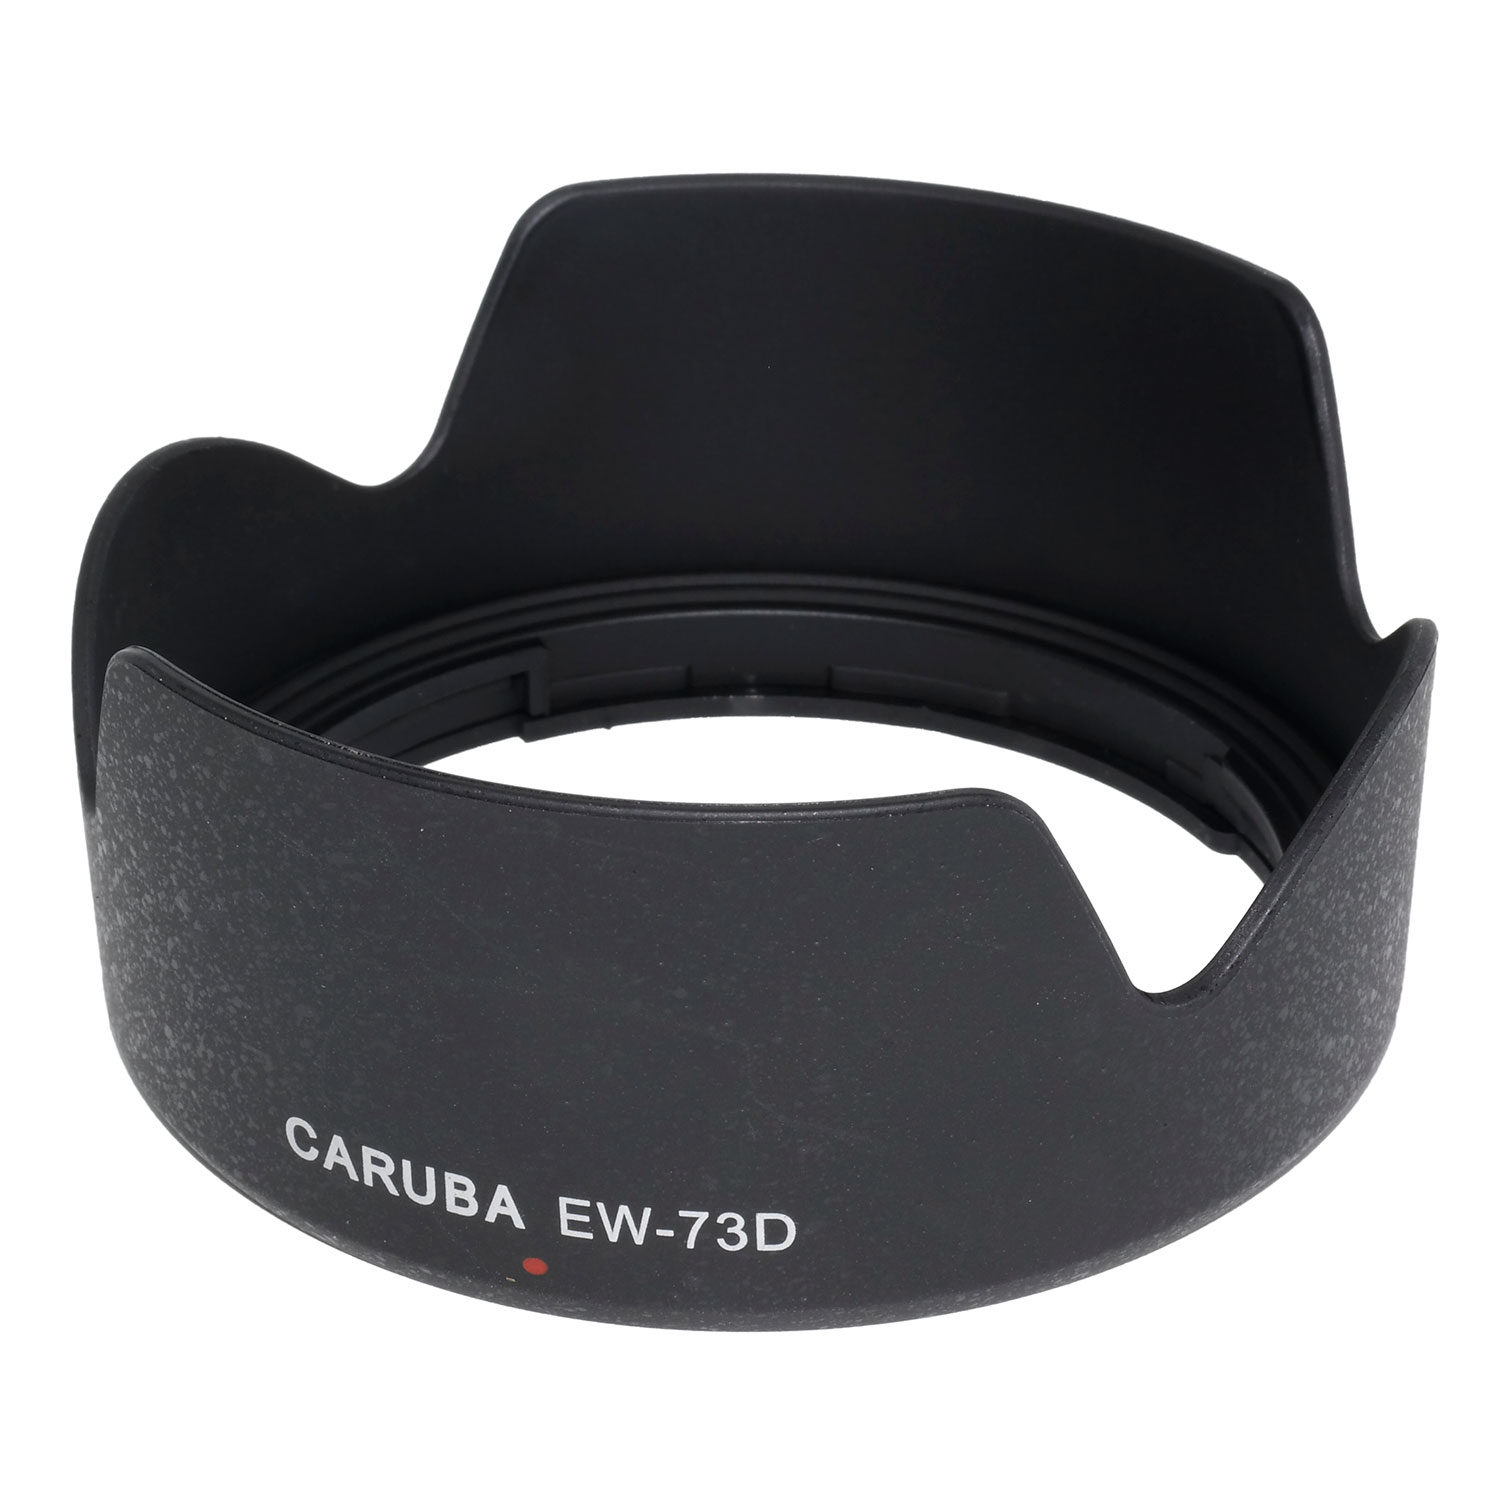 CARUBA Pára-sol similar ao Canon EW-73D